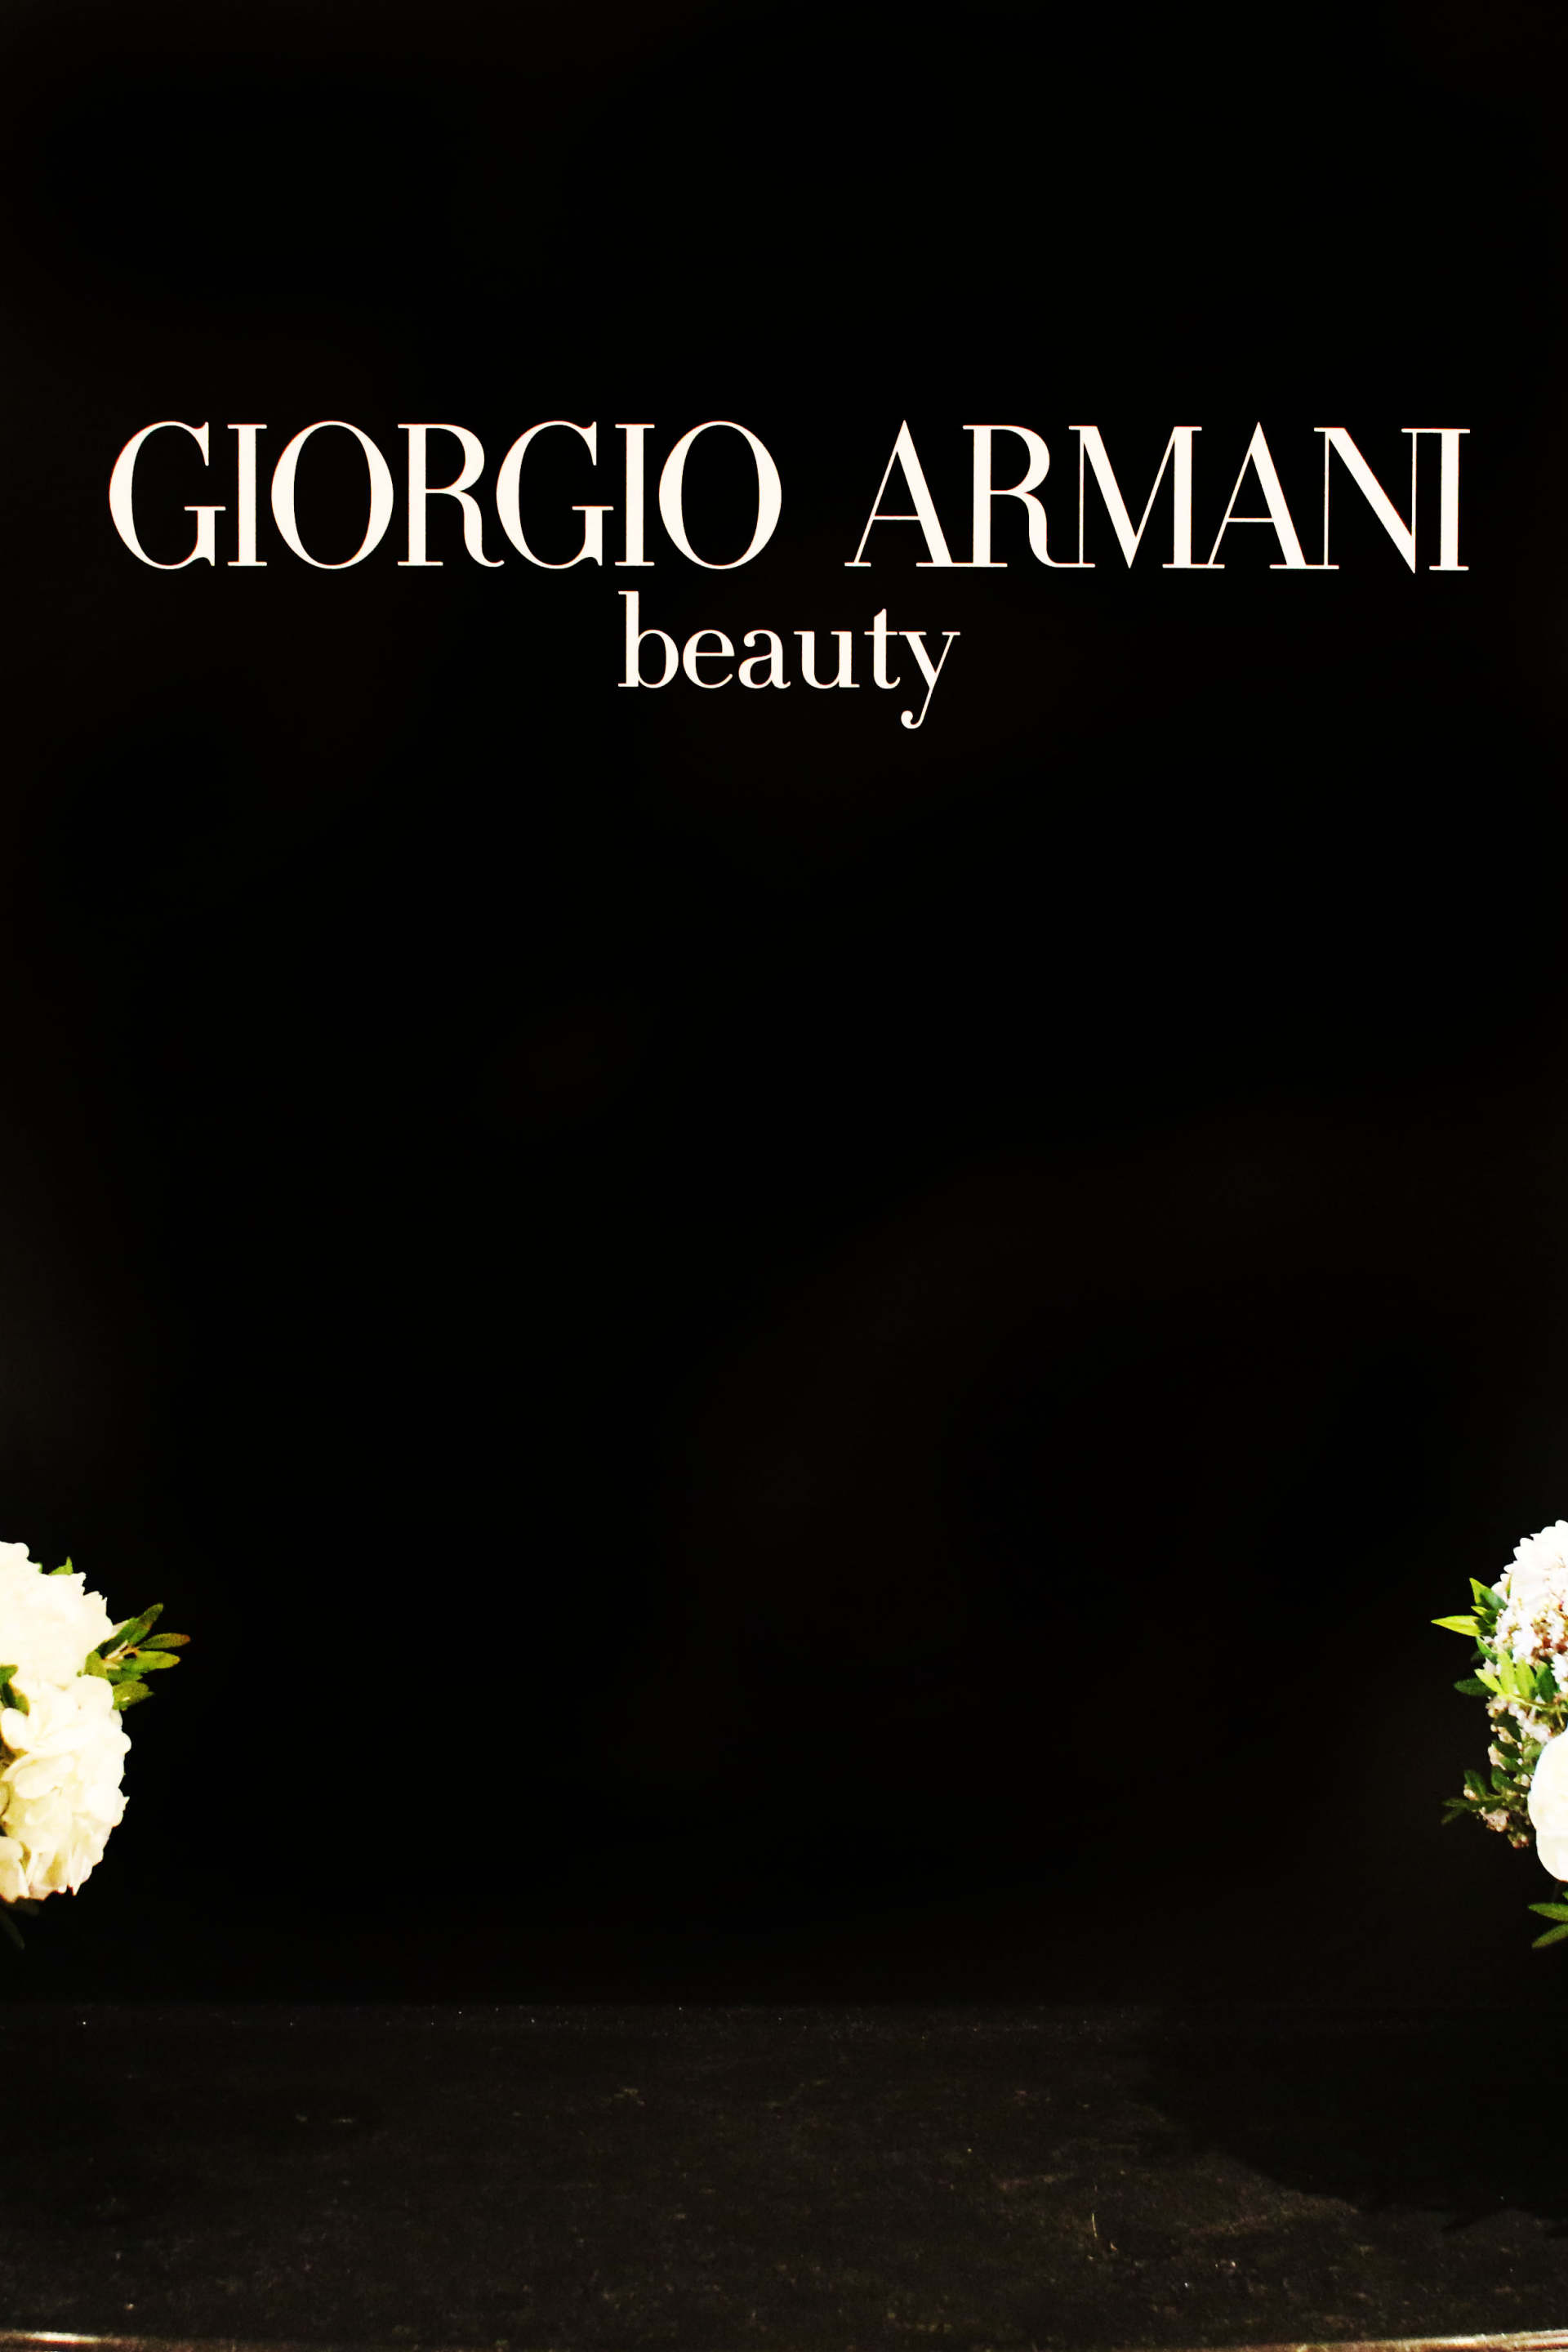 giorgio armani prive beauty